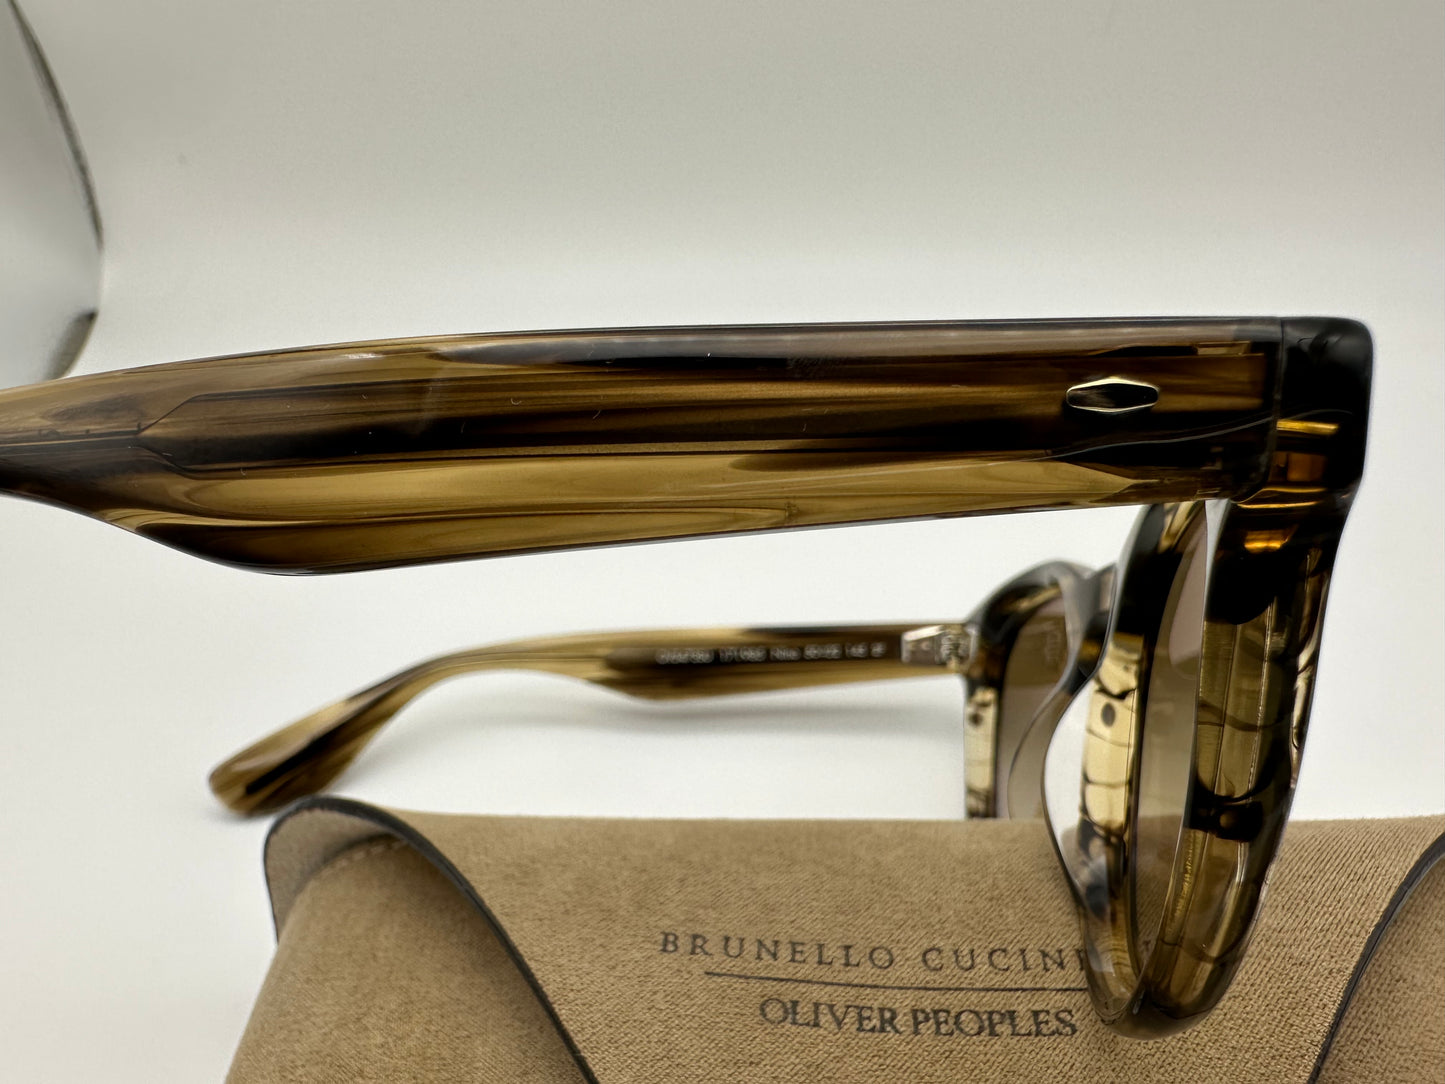 Oliver Peoples Nino 50mm OV 5473SU 171985 Olive Smoke/chrome Olive photochromic Sunglasses